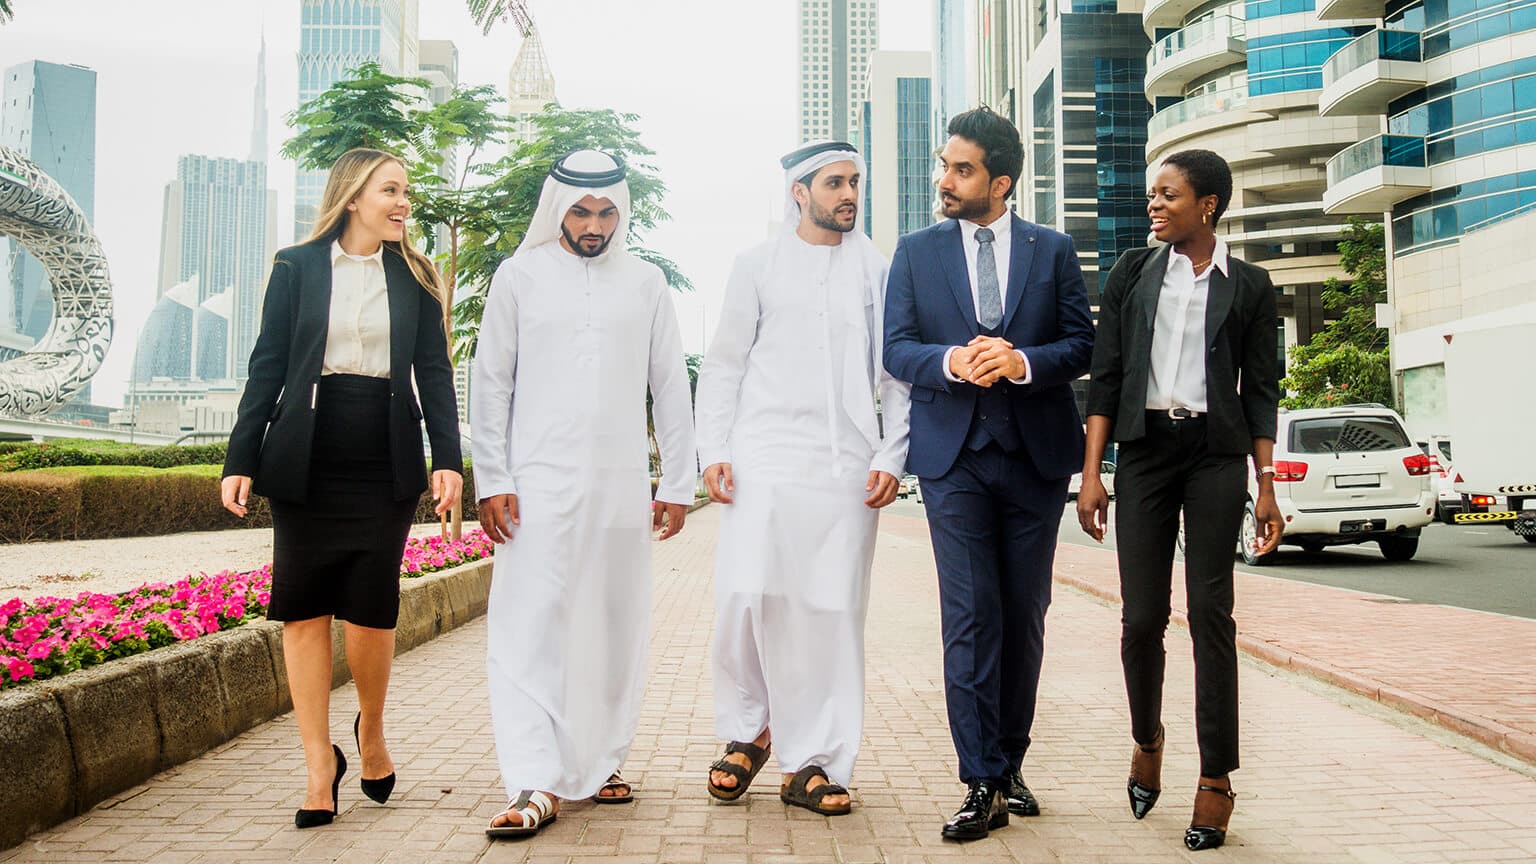 Dubai'de İş Bulma ve Çalışma Koşulları: İş Arama Yöntemleri, İş Başvuruları ve Çalışma İzinleri